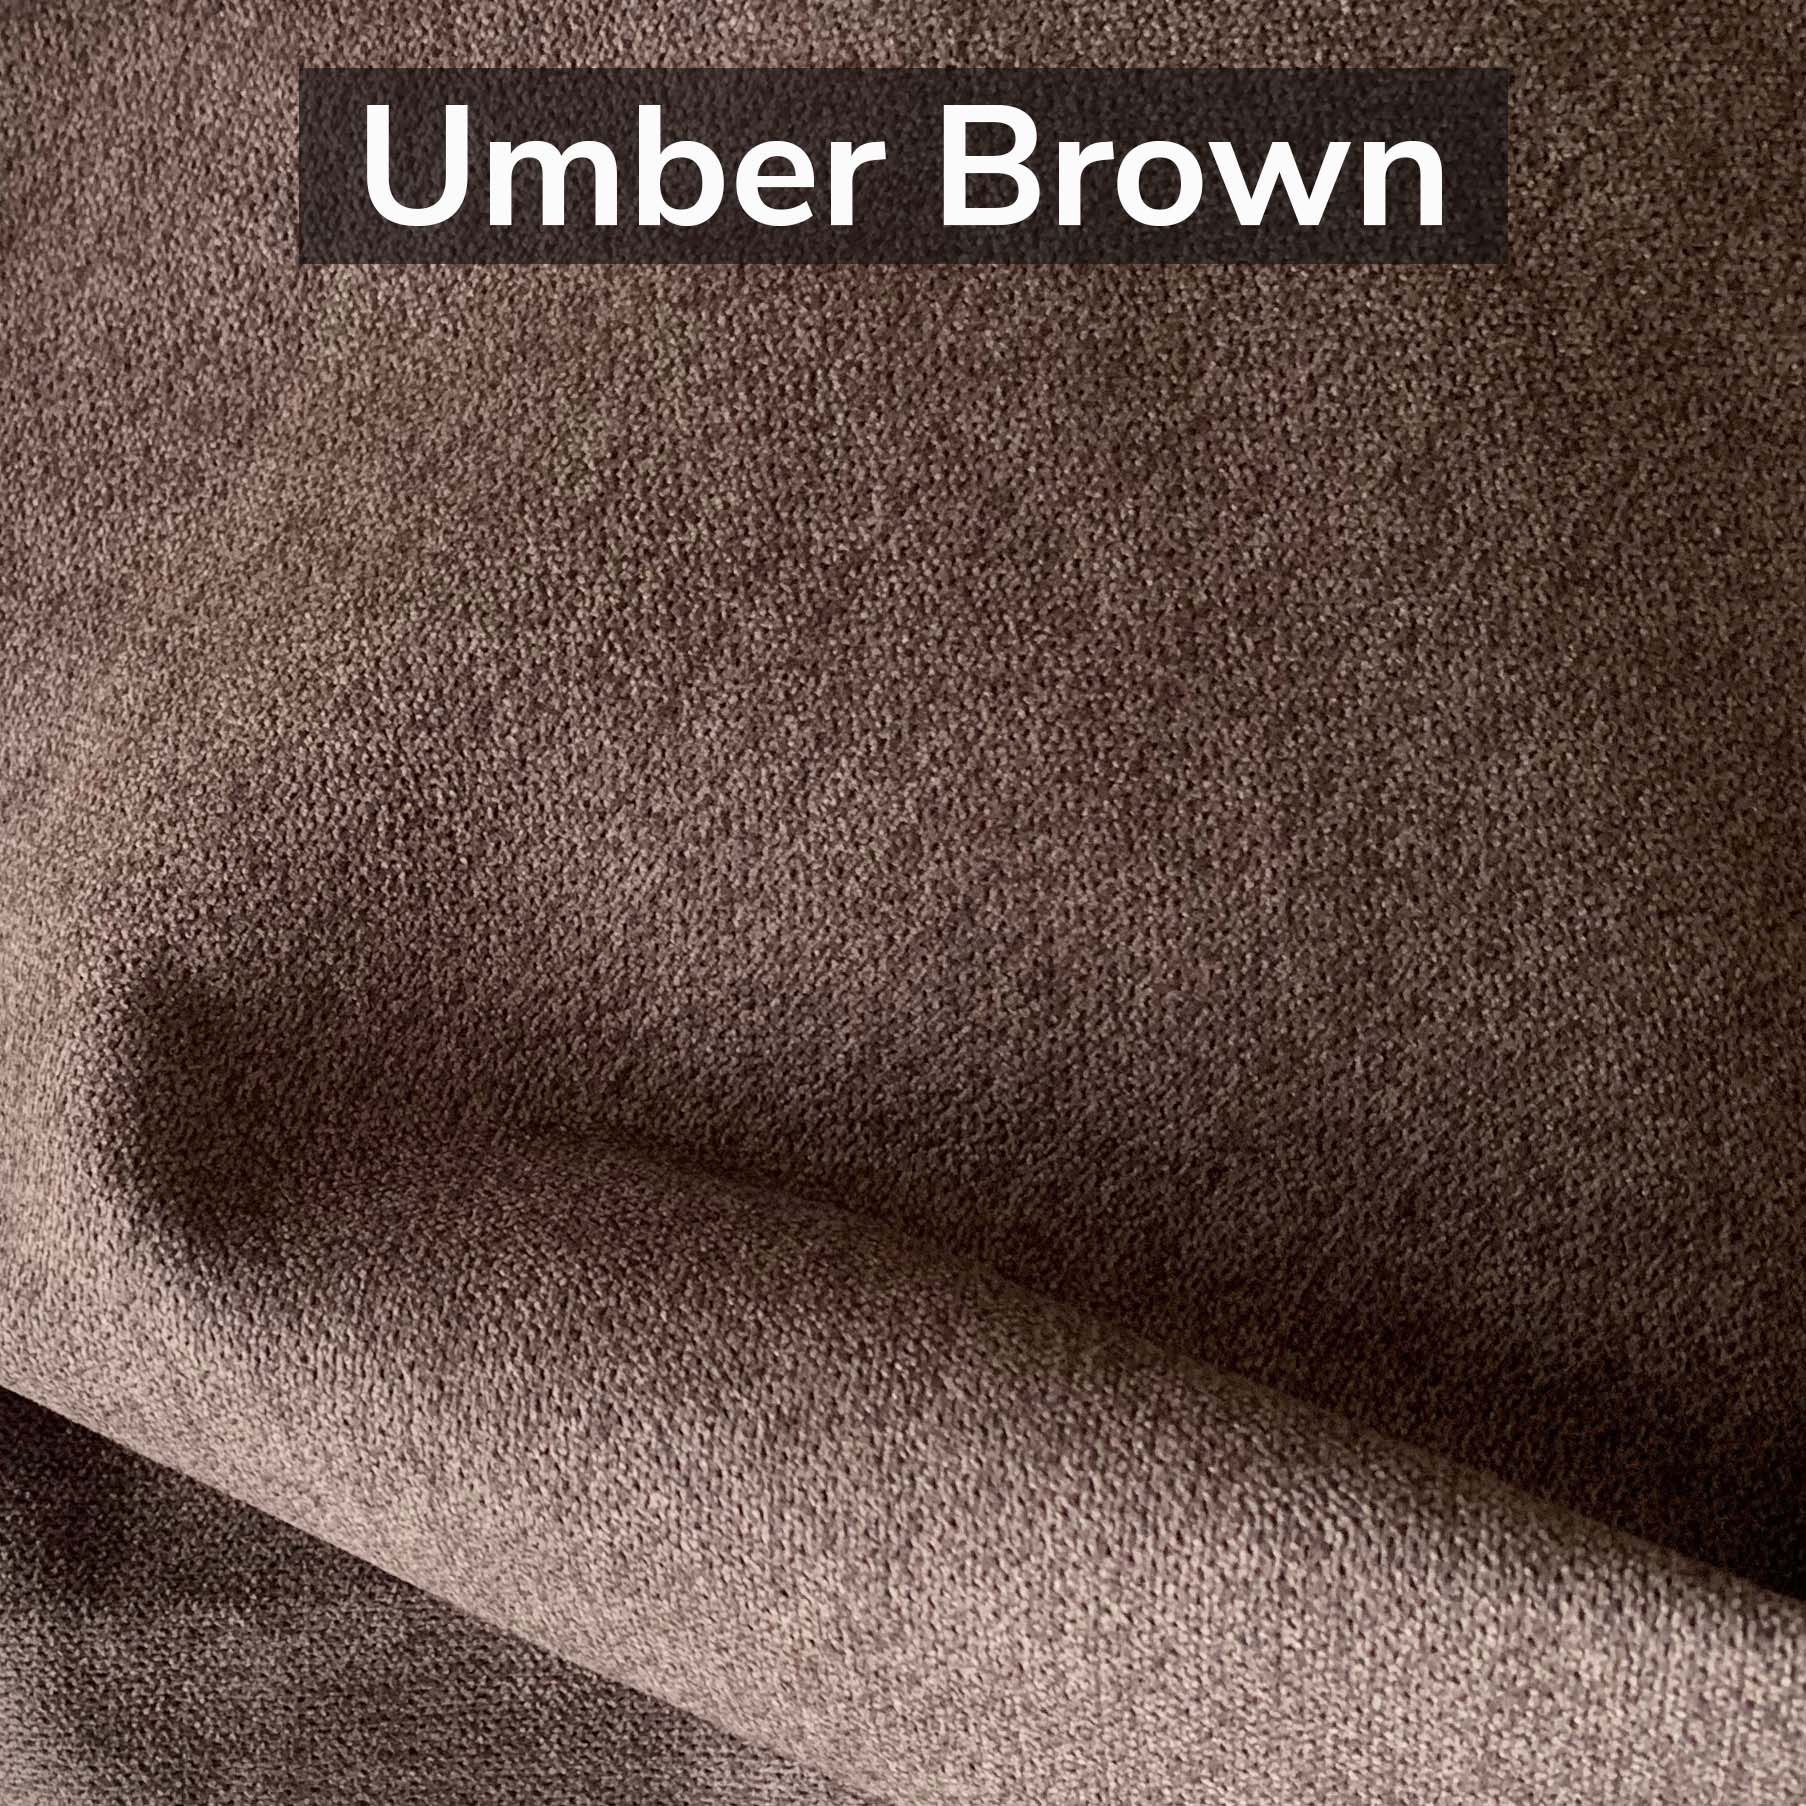 umber-brown